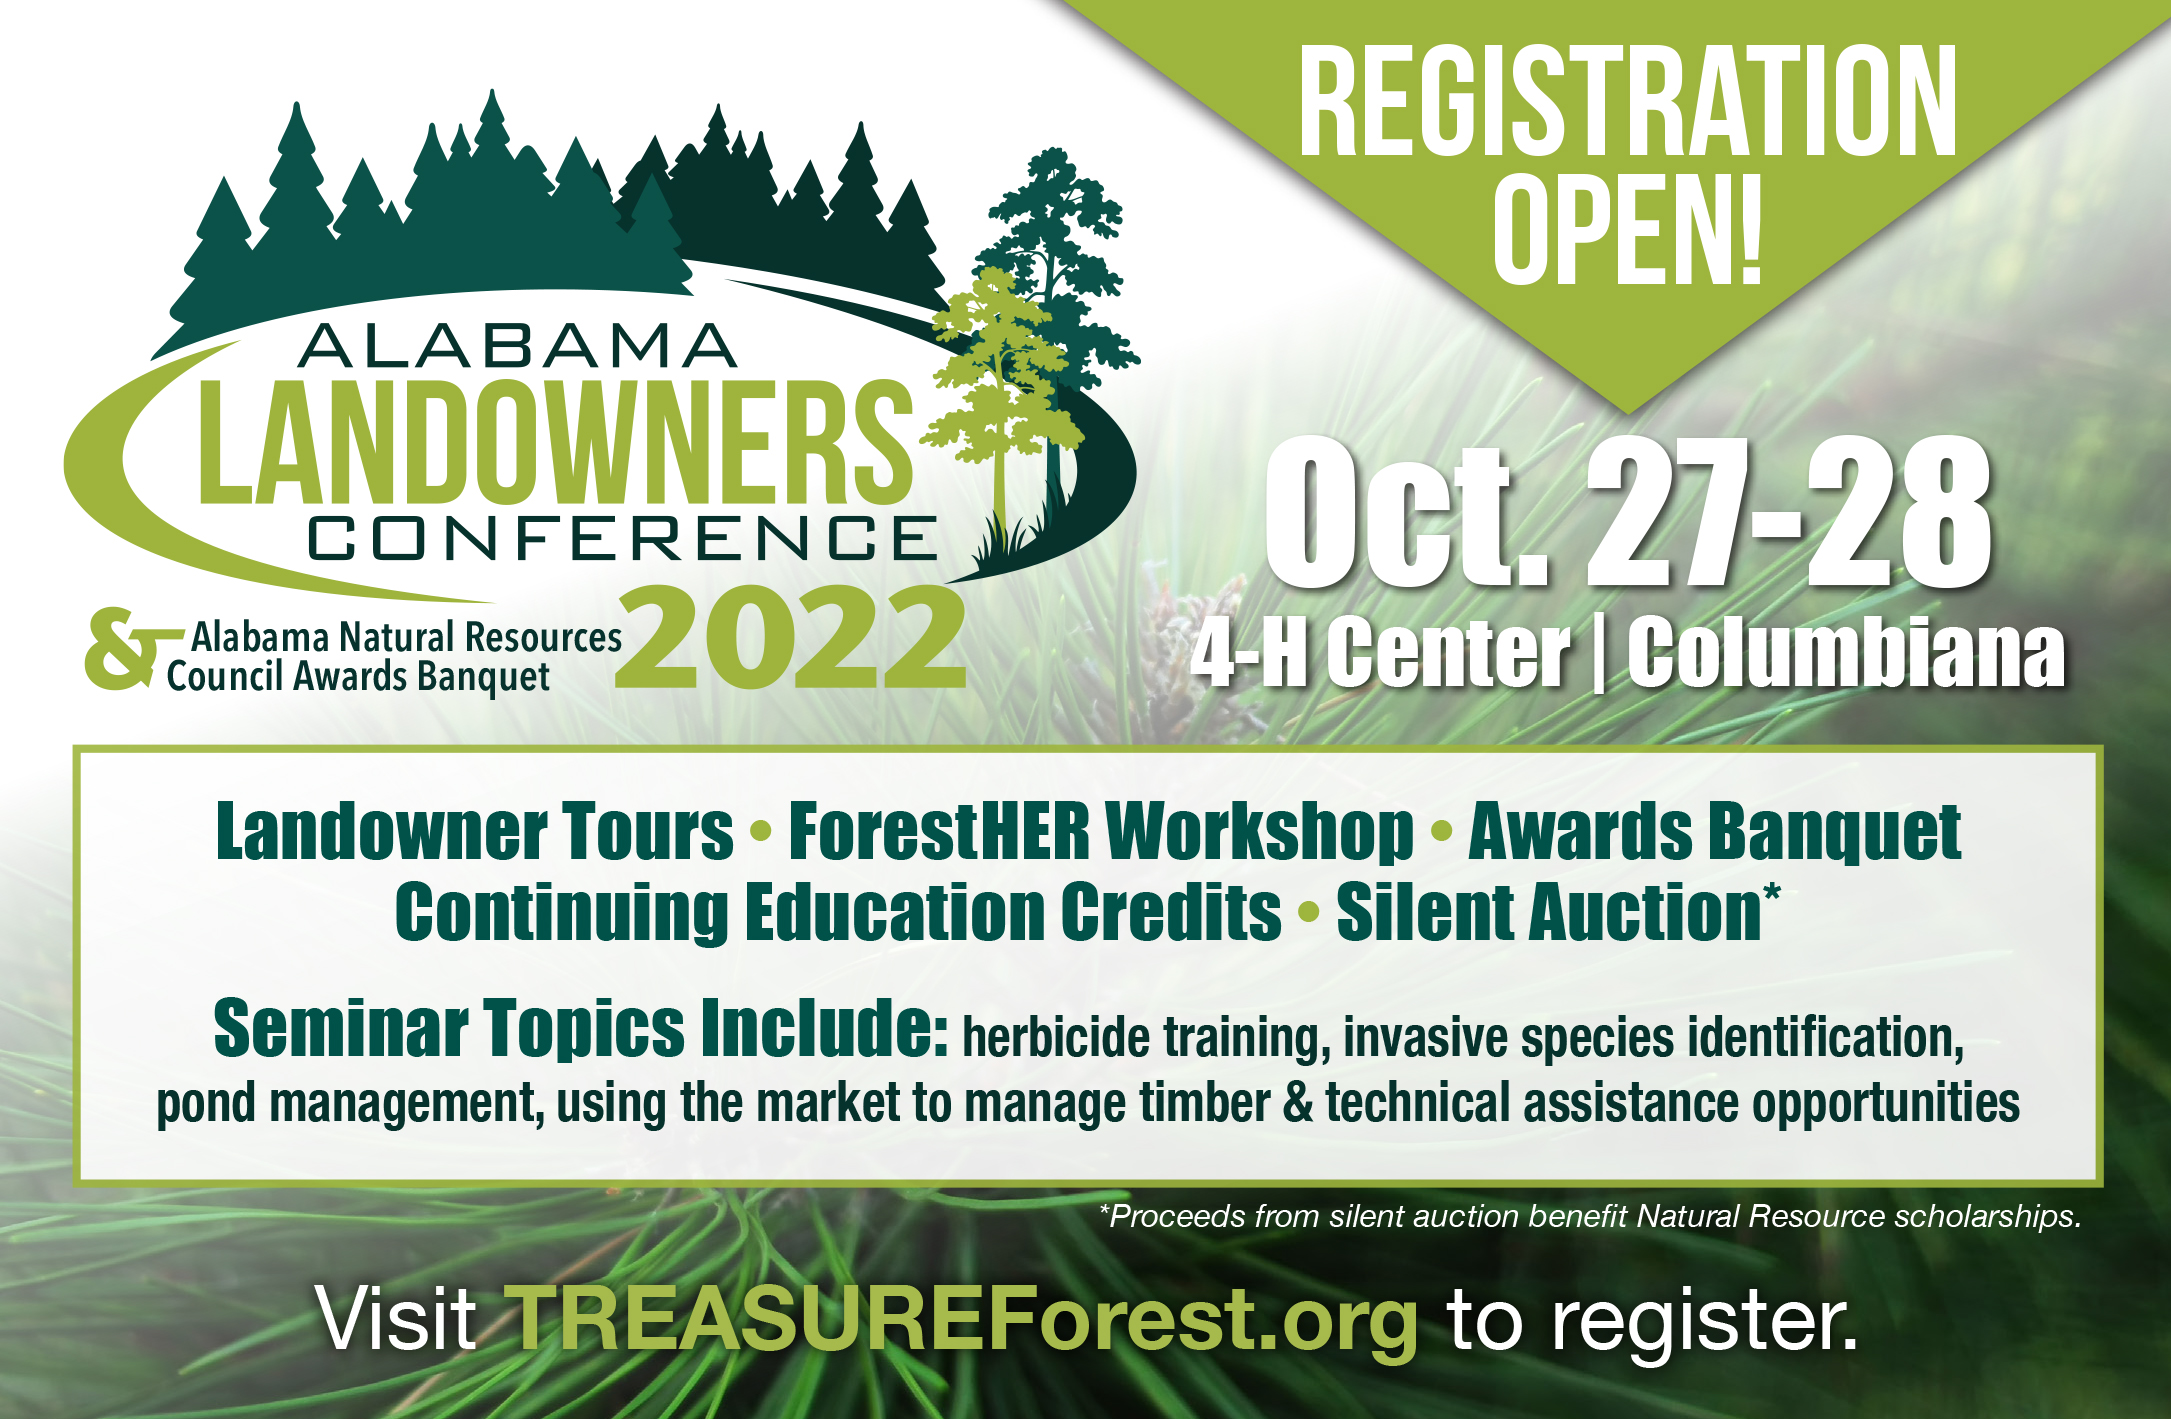 Landowner Conference Registration open